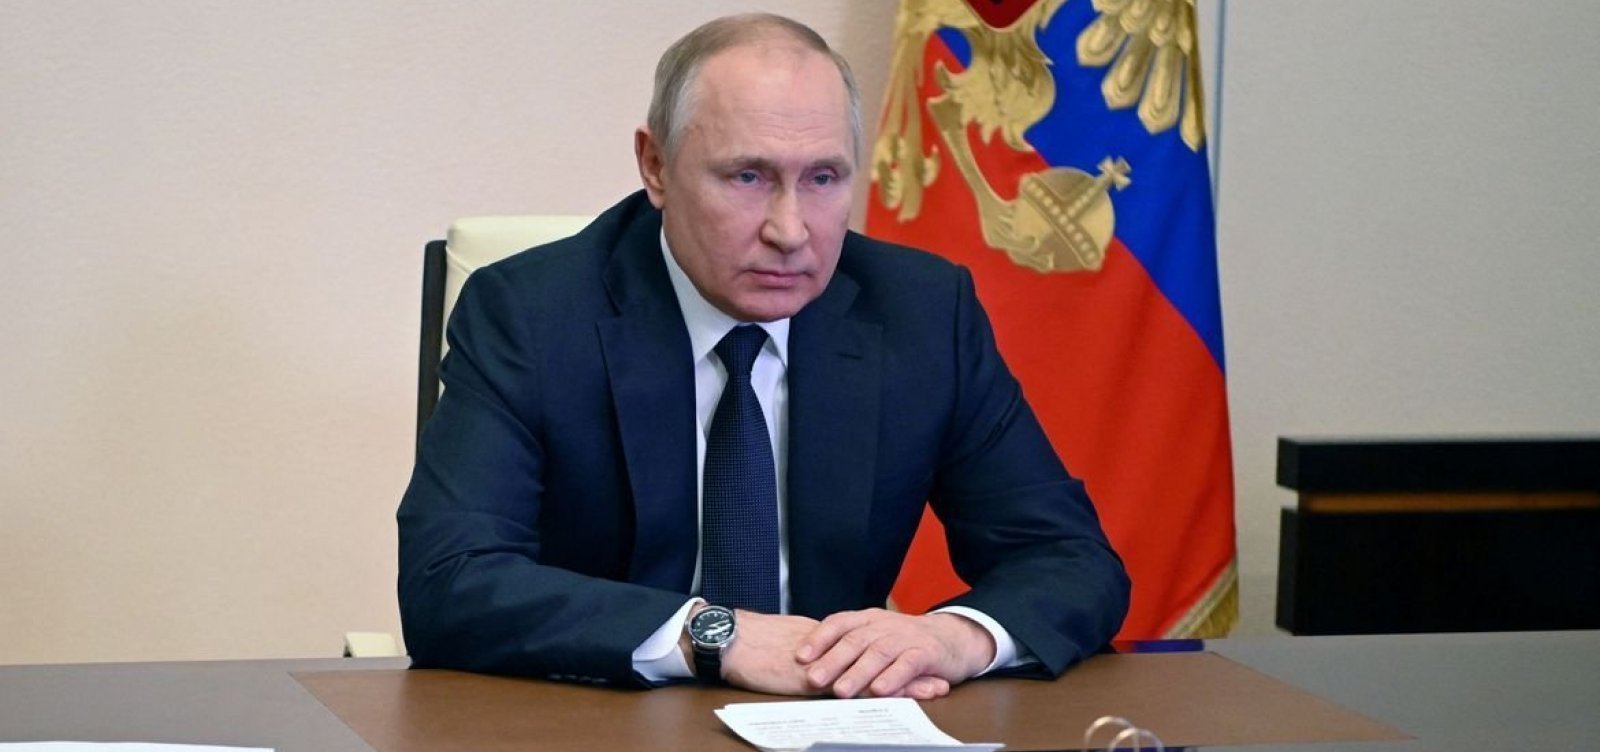 Comitê da Rússia diz ter comprovado ligação da Ucrânia com atentado em Moscou